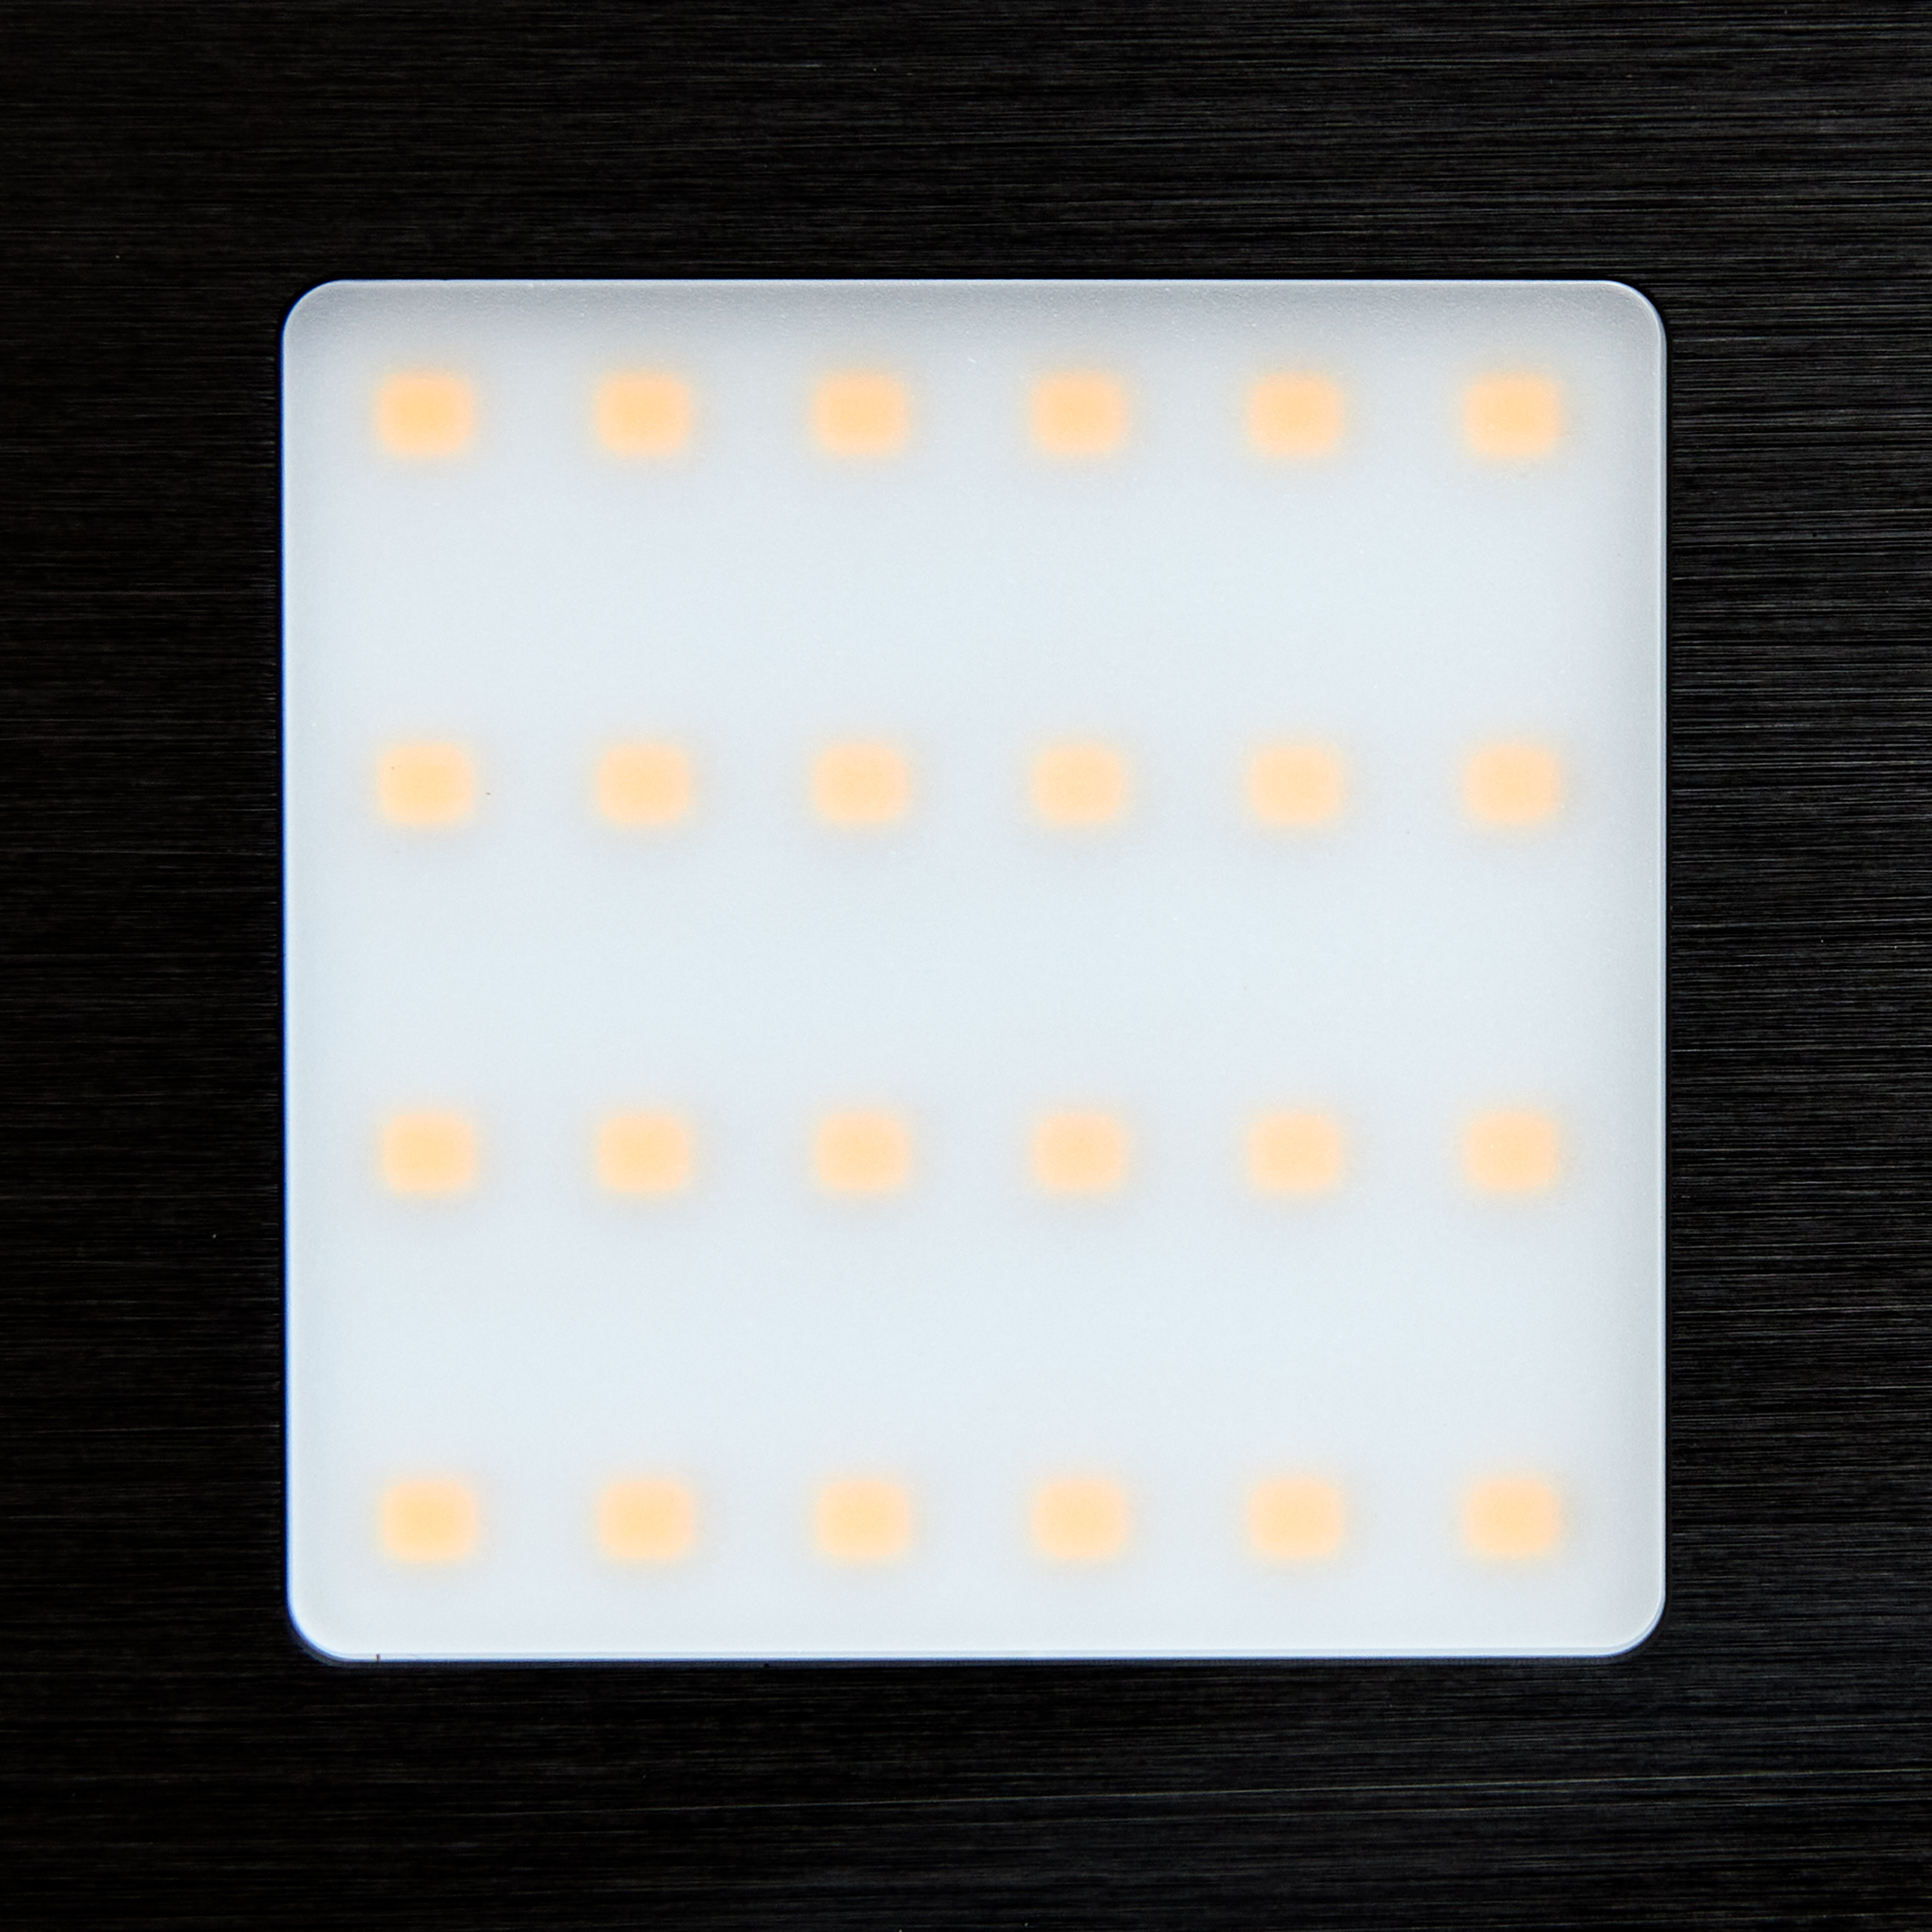 LED Foco plano Warmwhite 12V/5.3W 